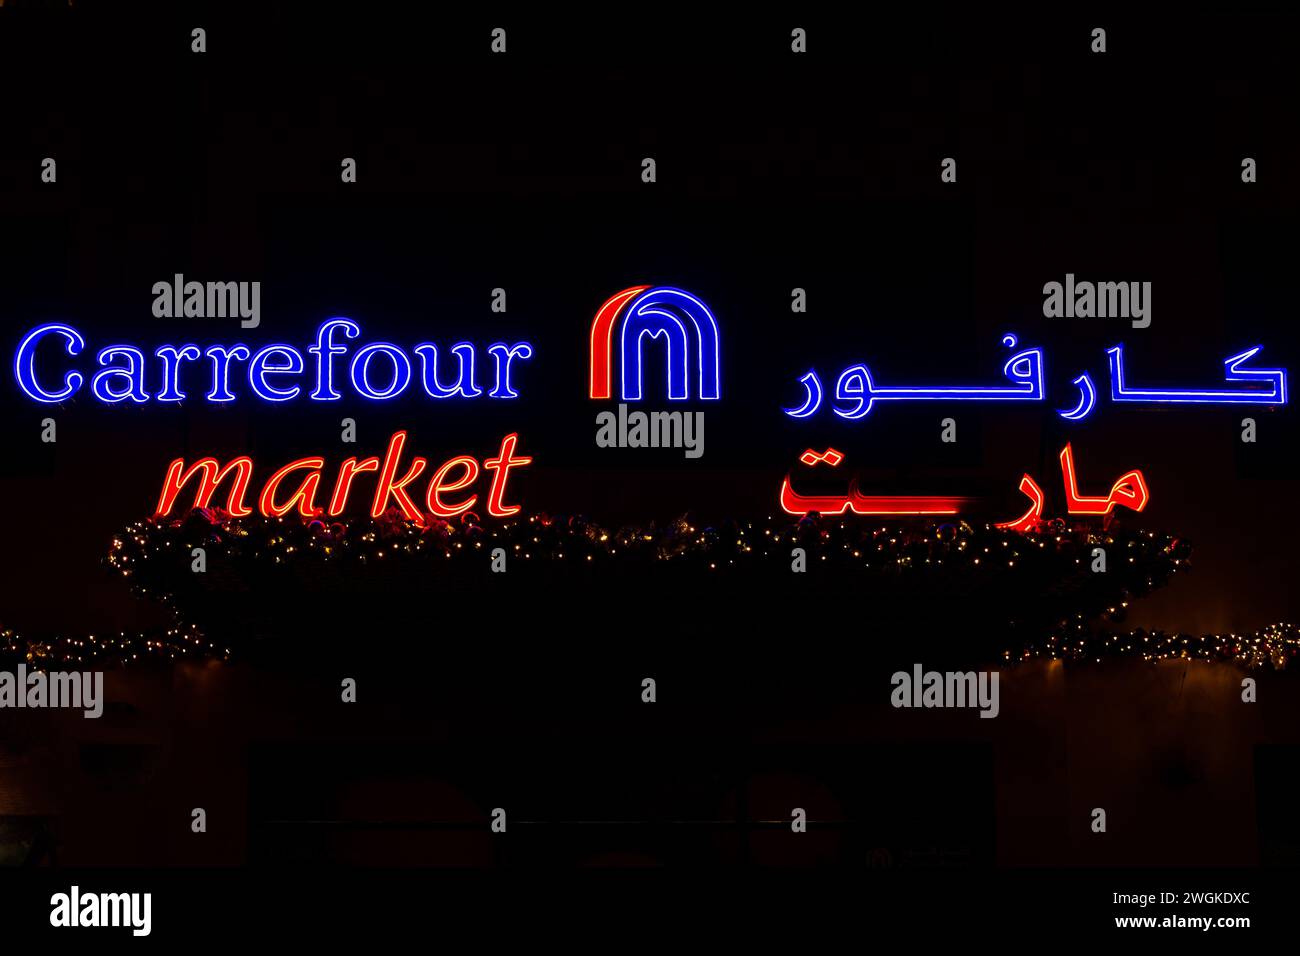 Dubaï, Émirats arabes Unis, 10.10.21. Logo lumineux Carrefour Market avec nom de marque arabe et décorations de lumières de Noël sur fond noir, Dubaï, Émirats arabes Unis Banque D'Images